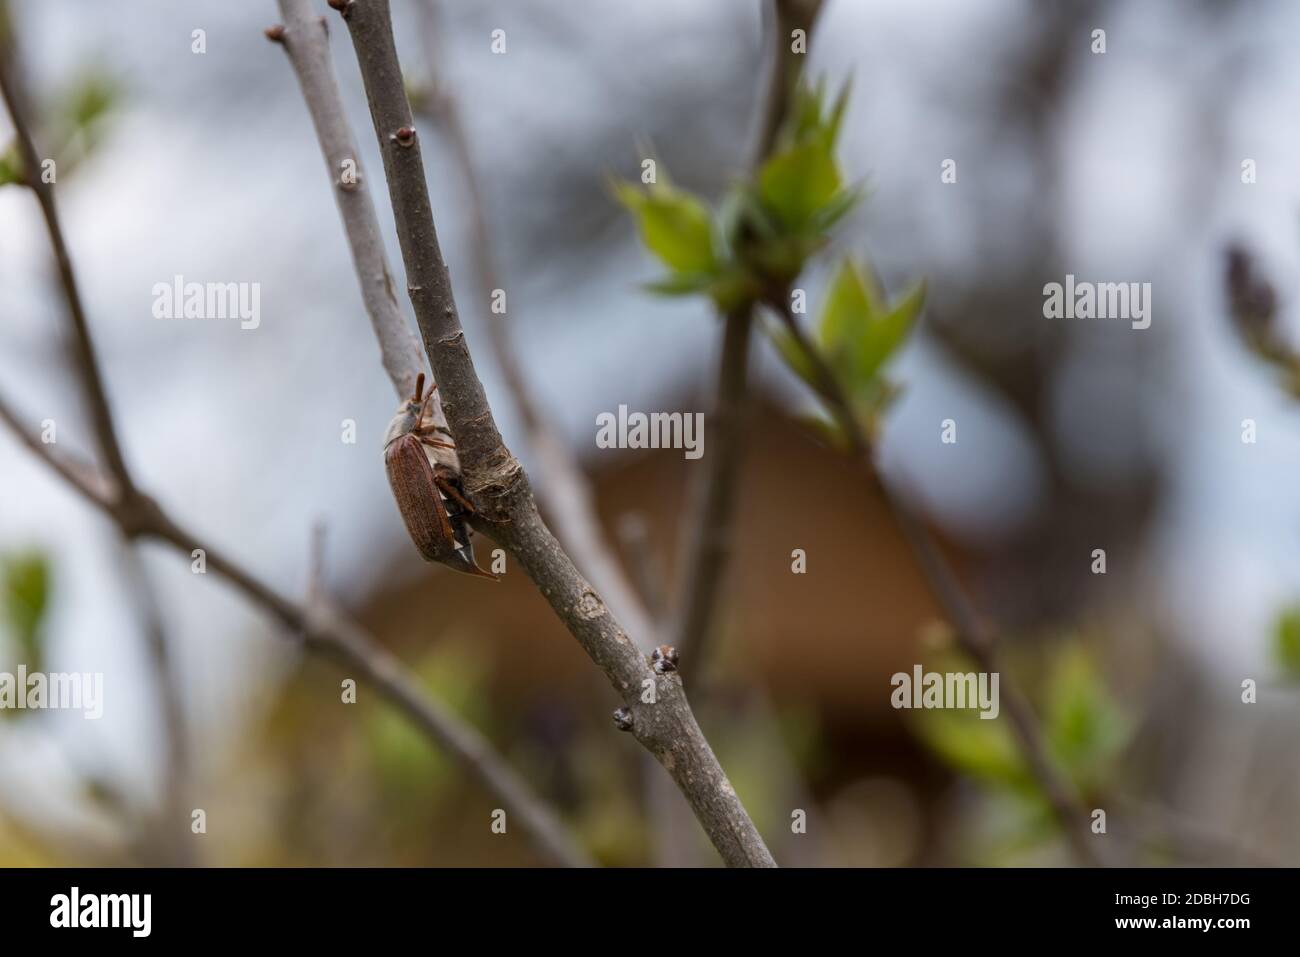 Peste de escarabajo de junio - insecto marrón de la familia de la viga de caballo Foto de stock